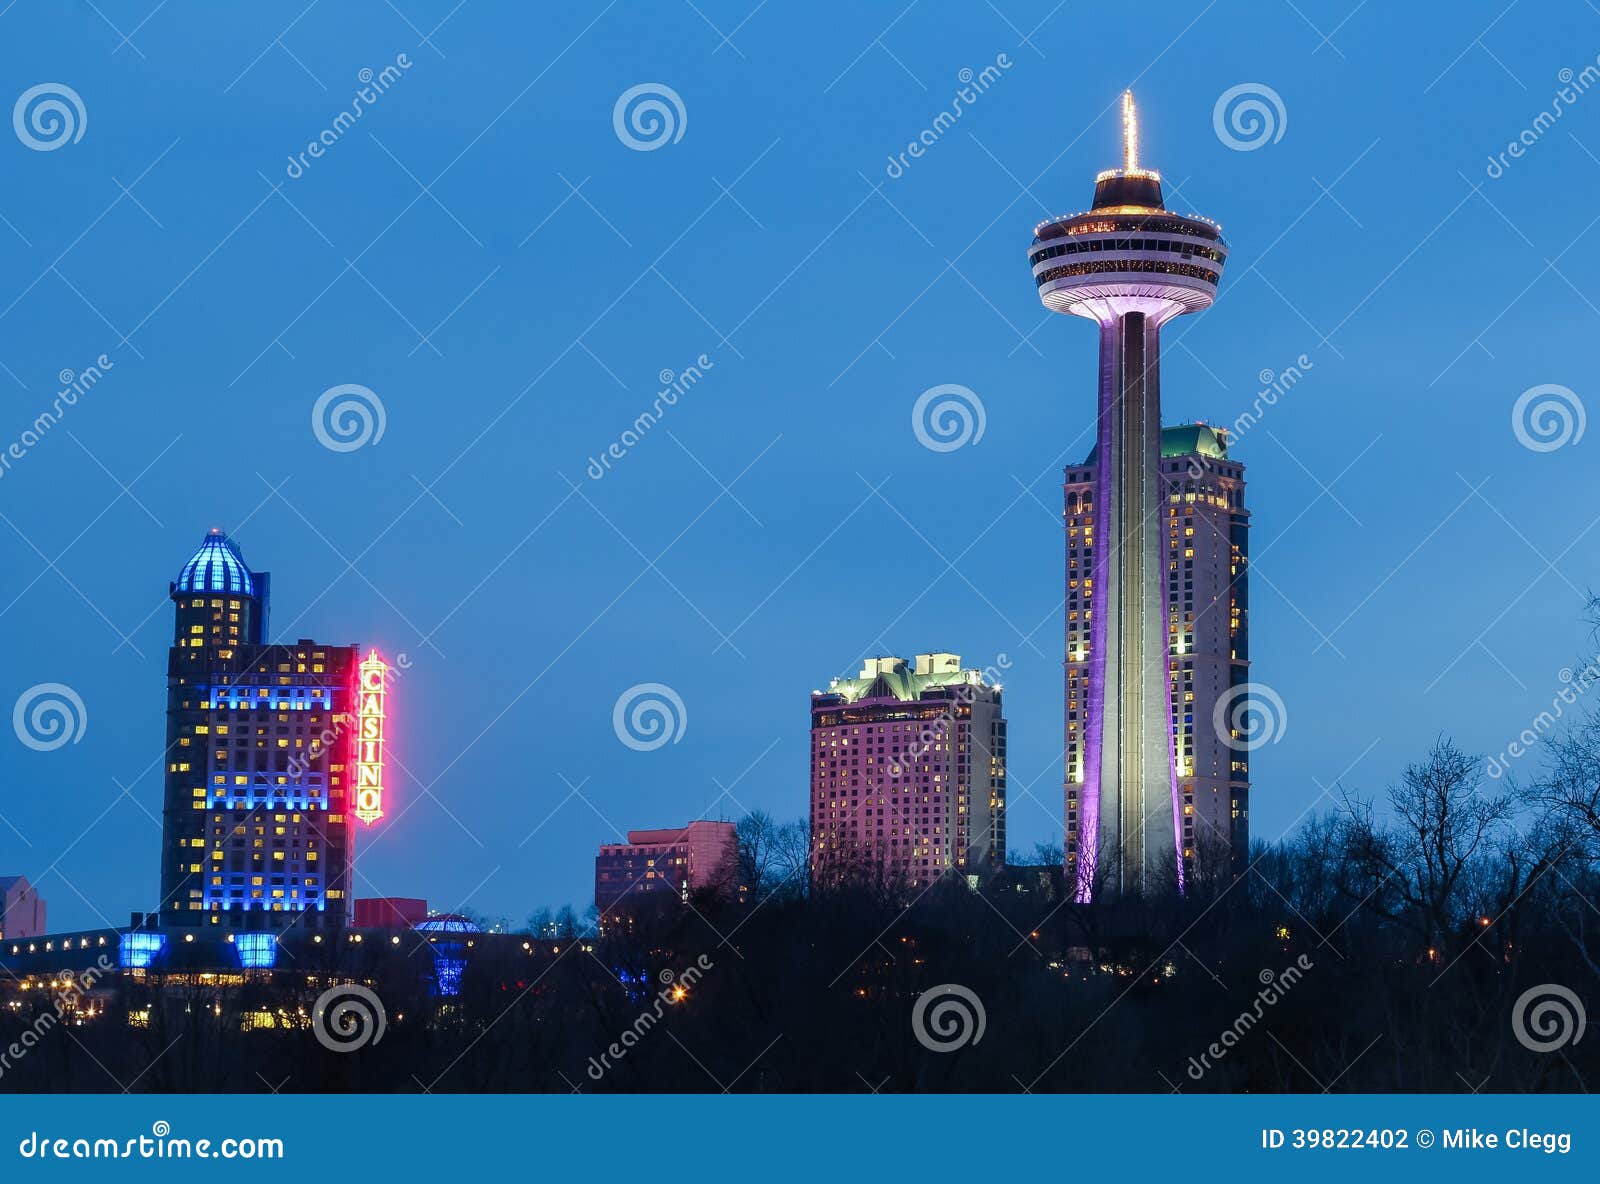  2014: The Skylon Tower, Casino and hotels at Niagara Falls at night